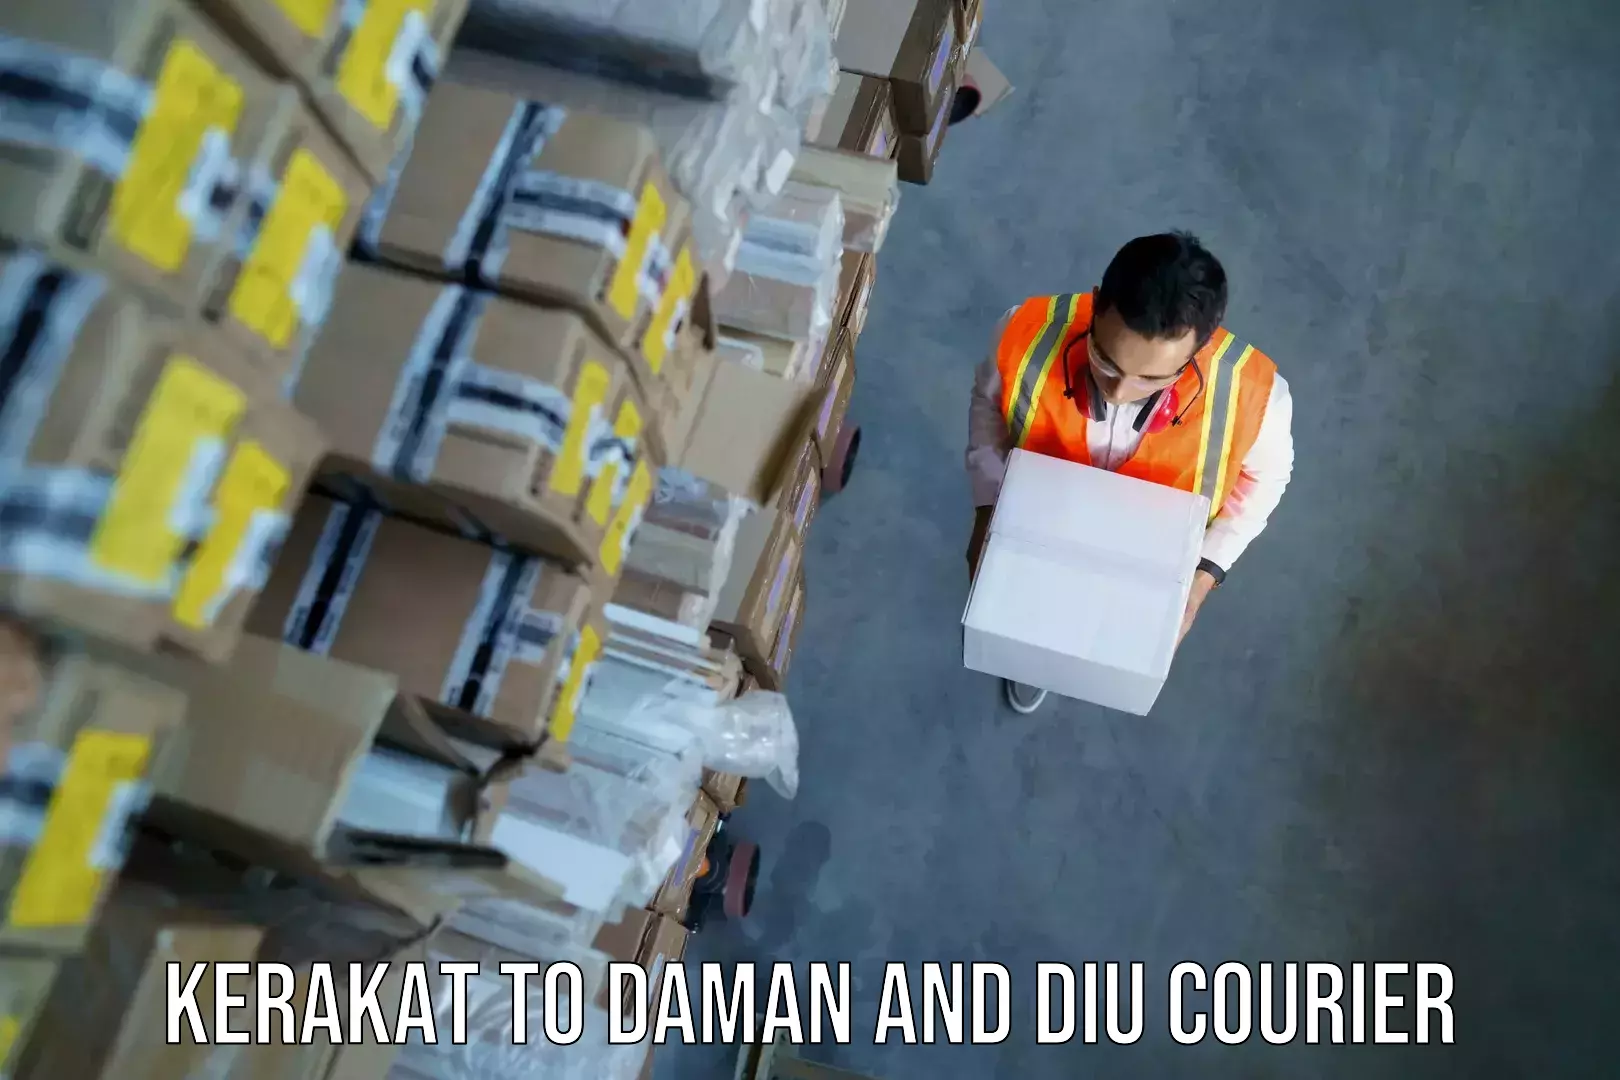 Nationwide luggage courier Kerakat to Daman